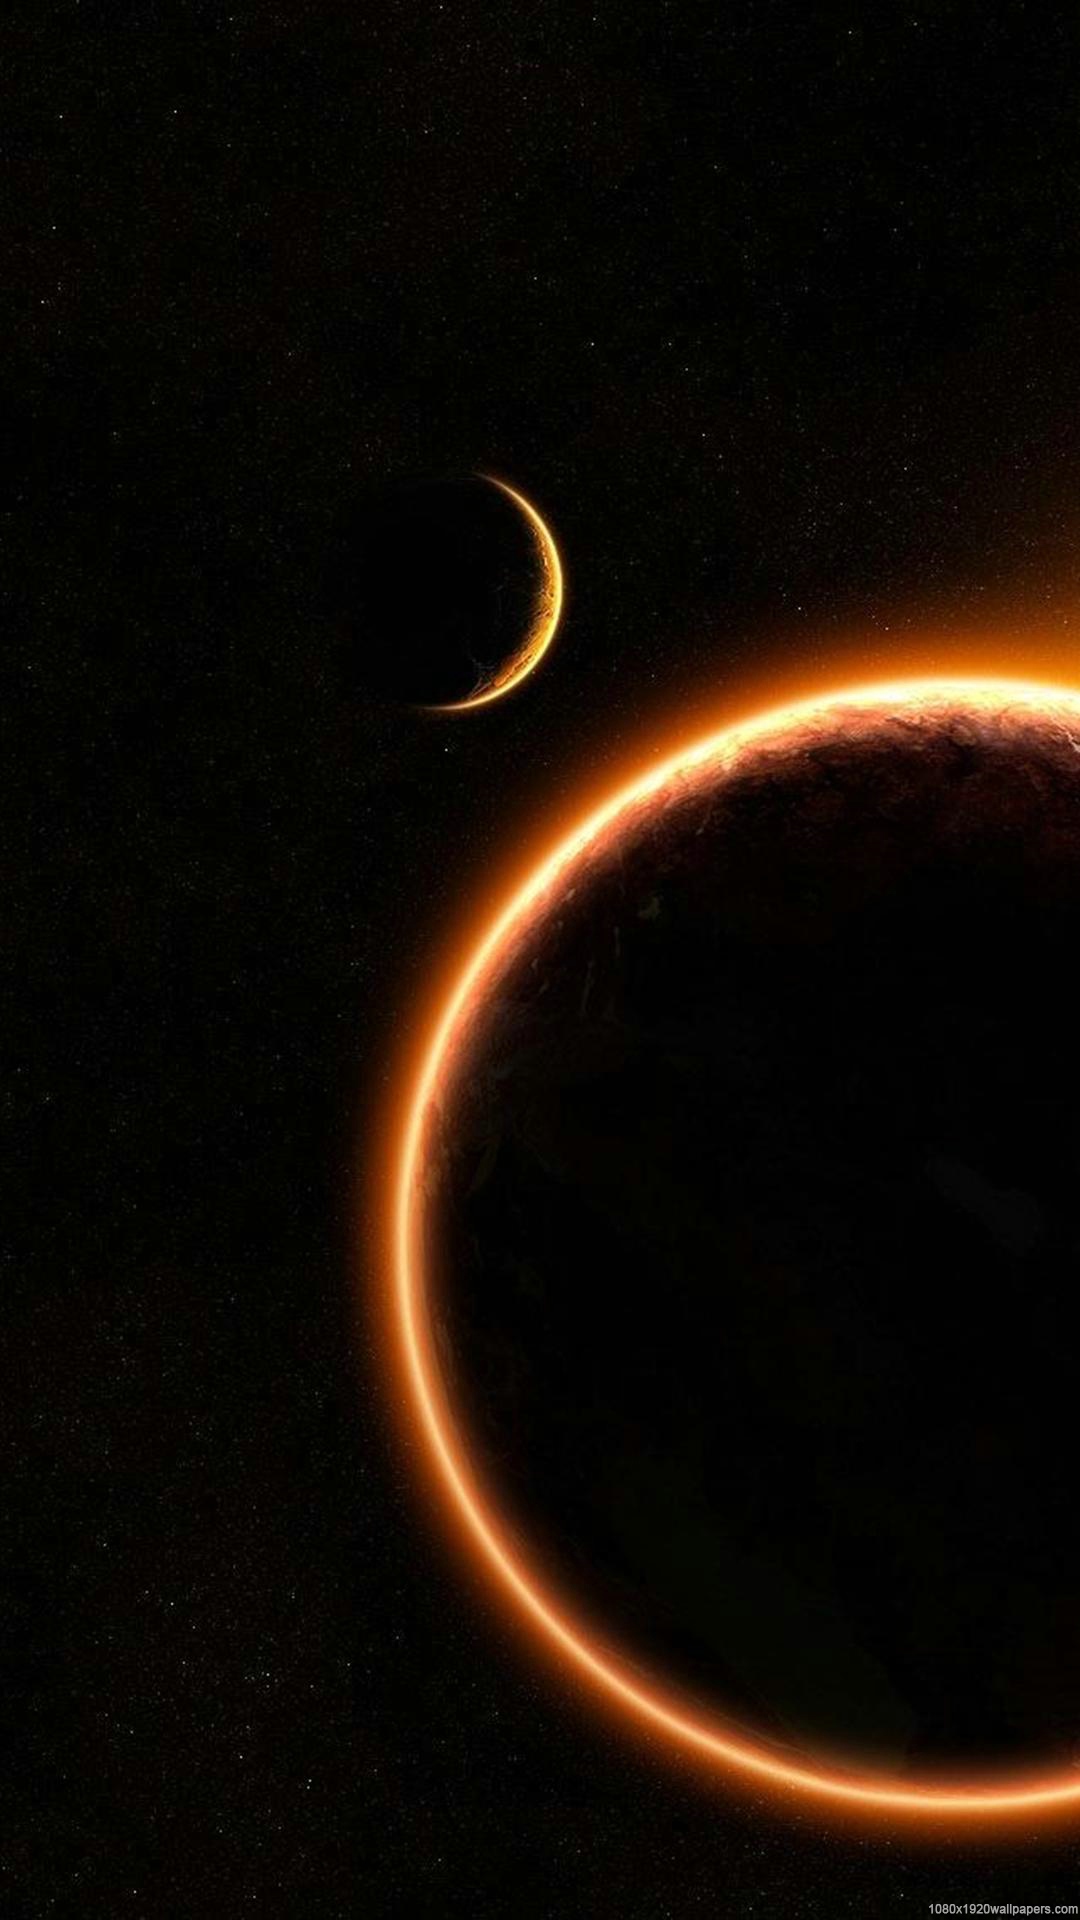 eclipse iphone wallpaper,halbmond,atmosphäre,astronomisches objekt,weltraum,finsternis